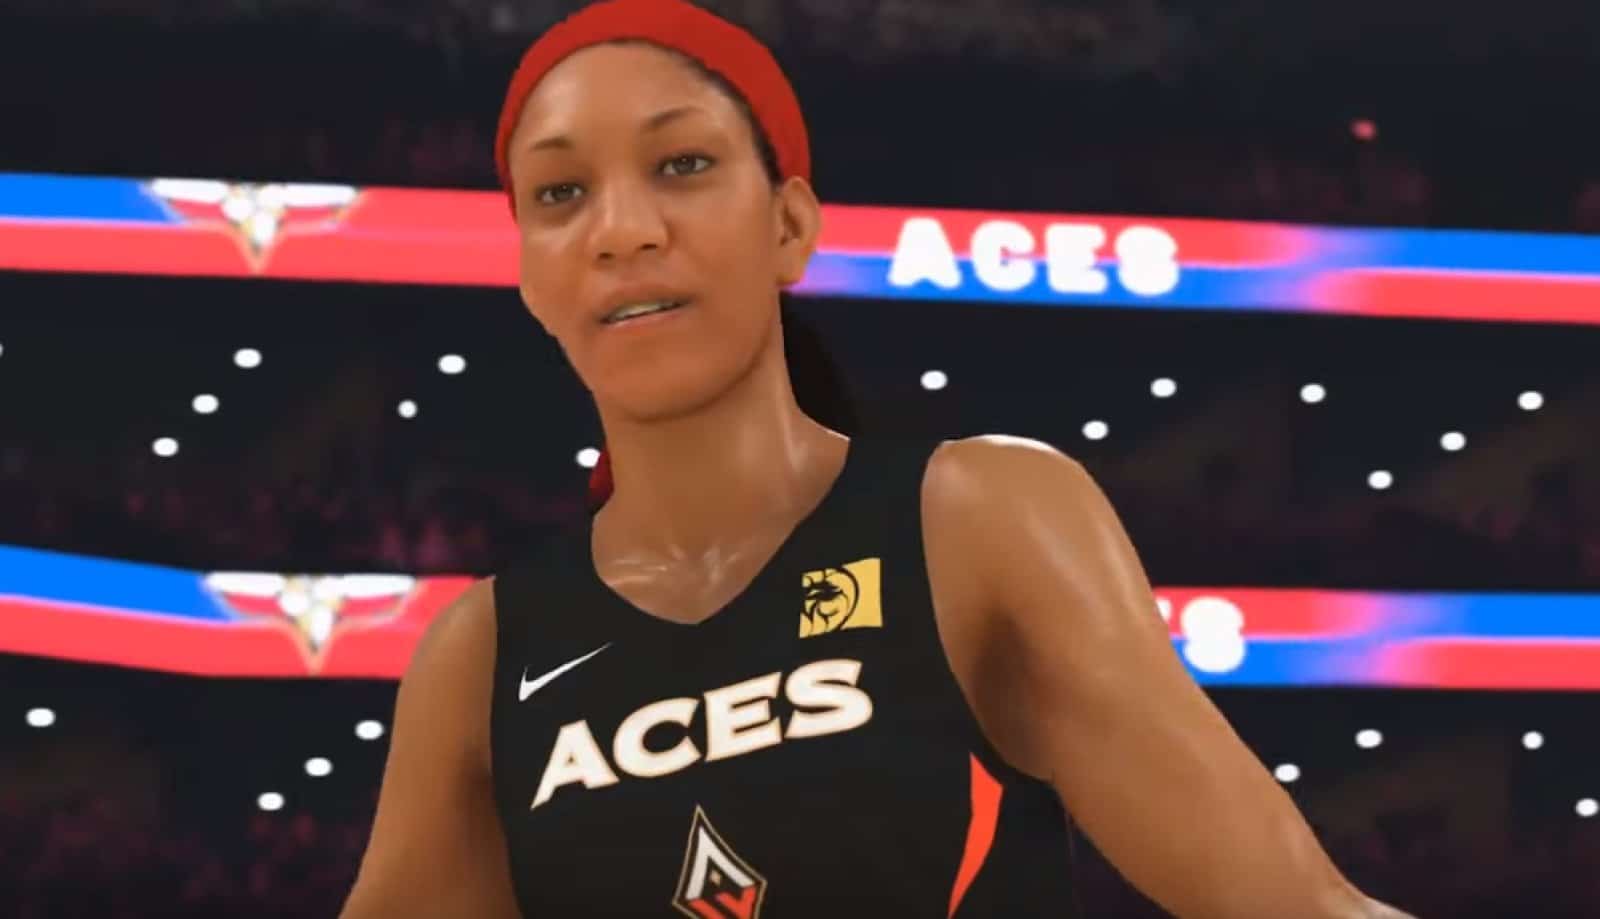 La nuova WNBA inserita nel gioco NBA 2K20